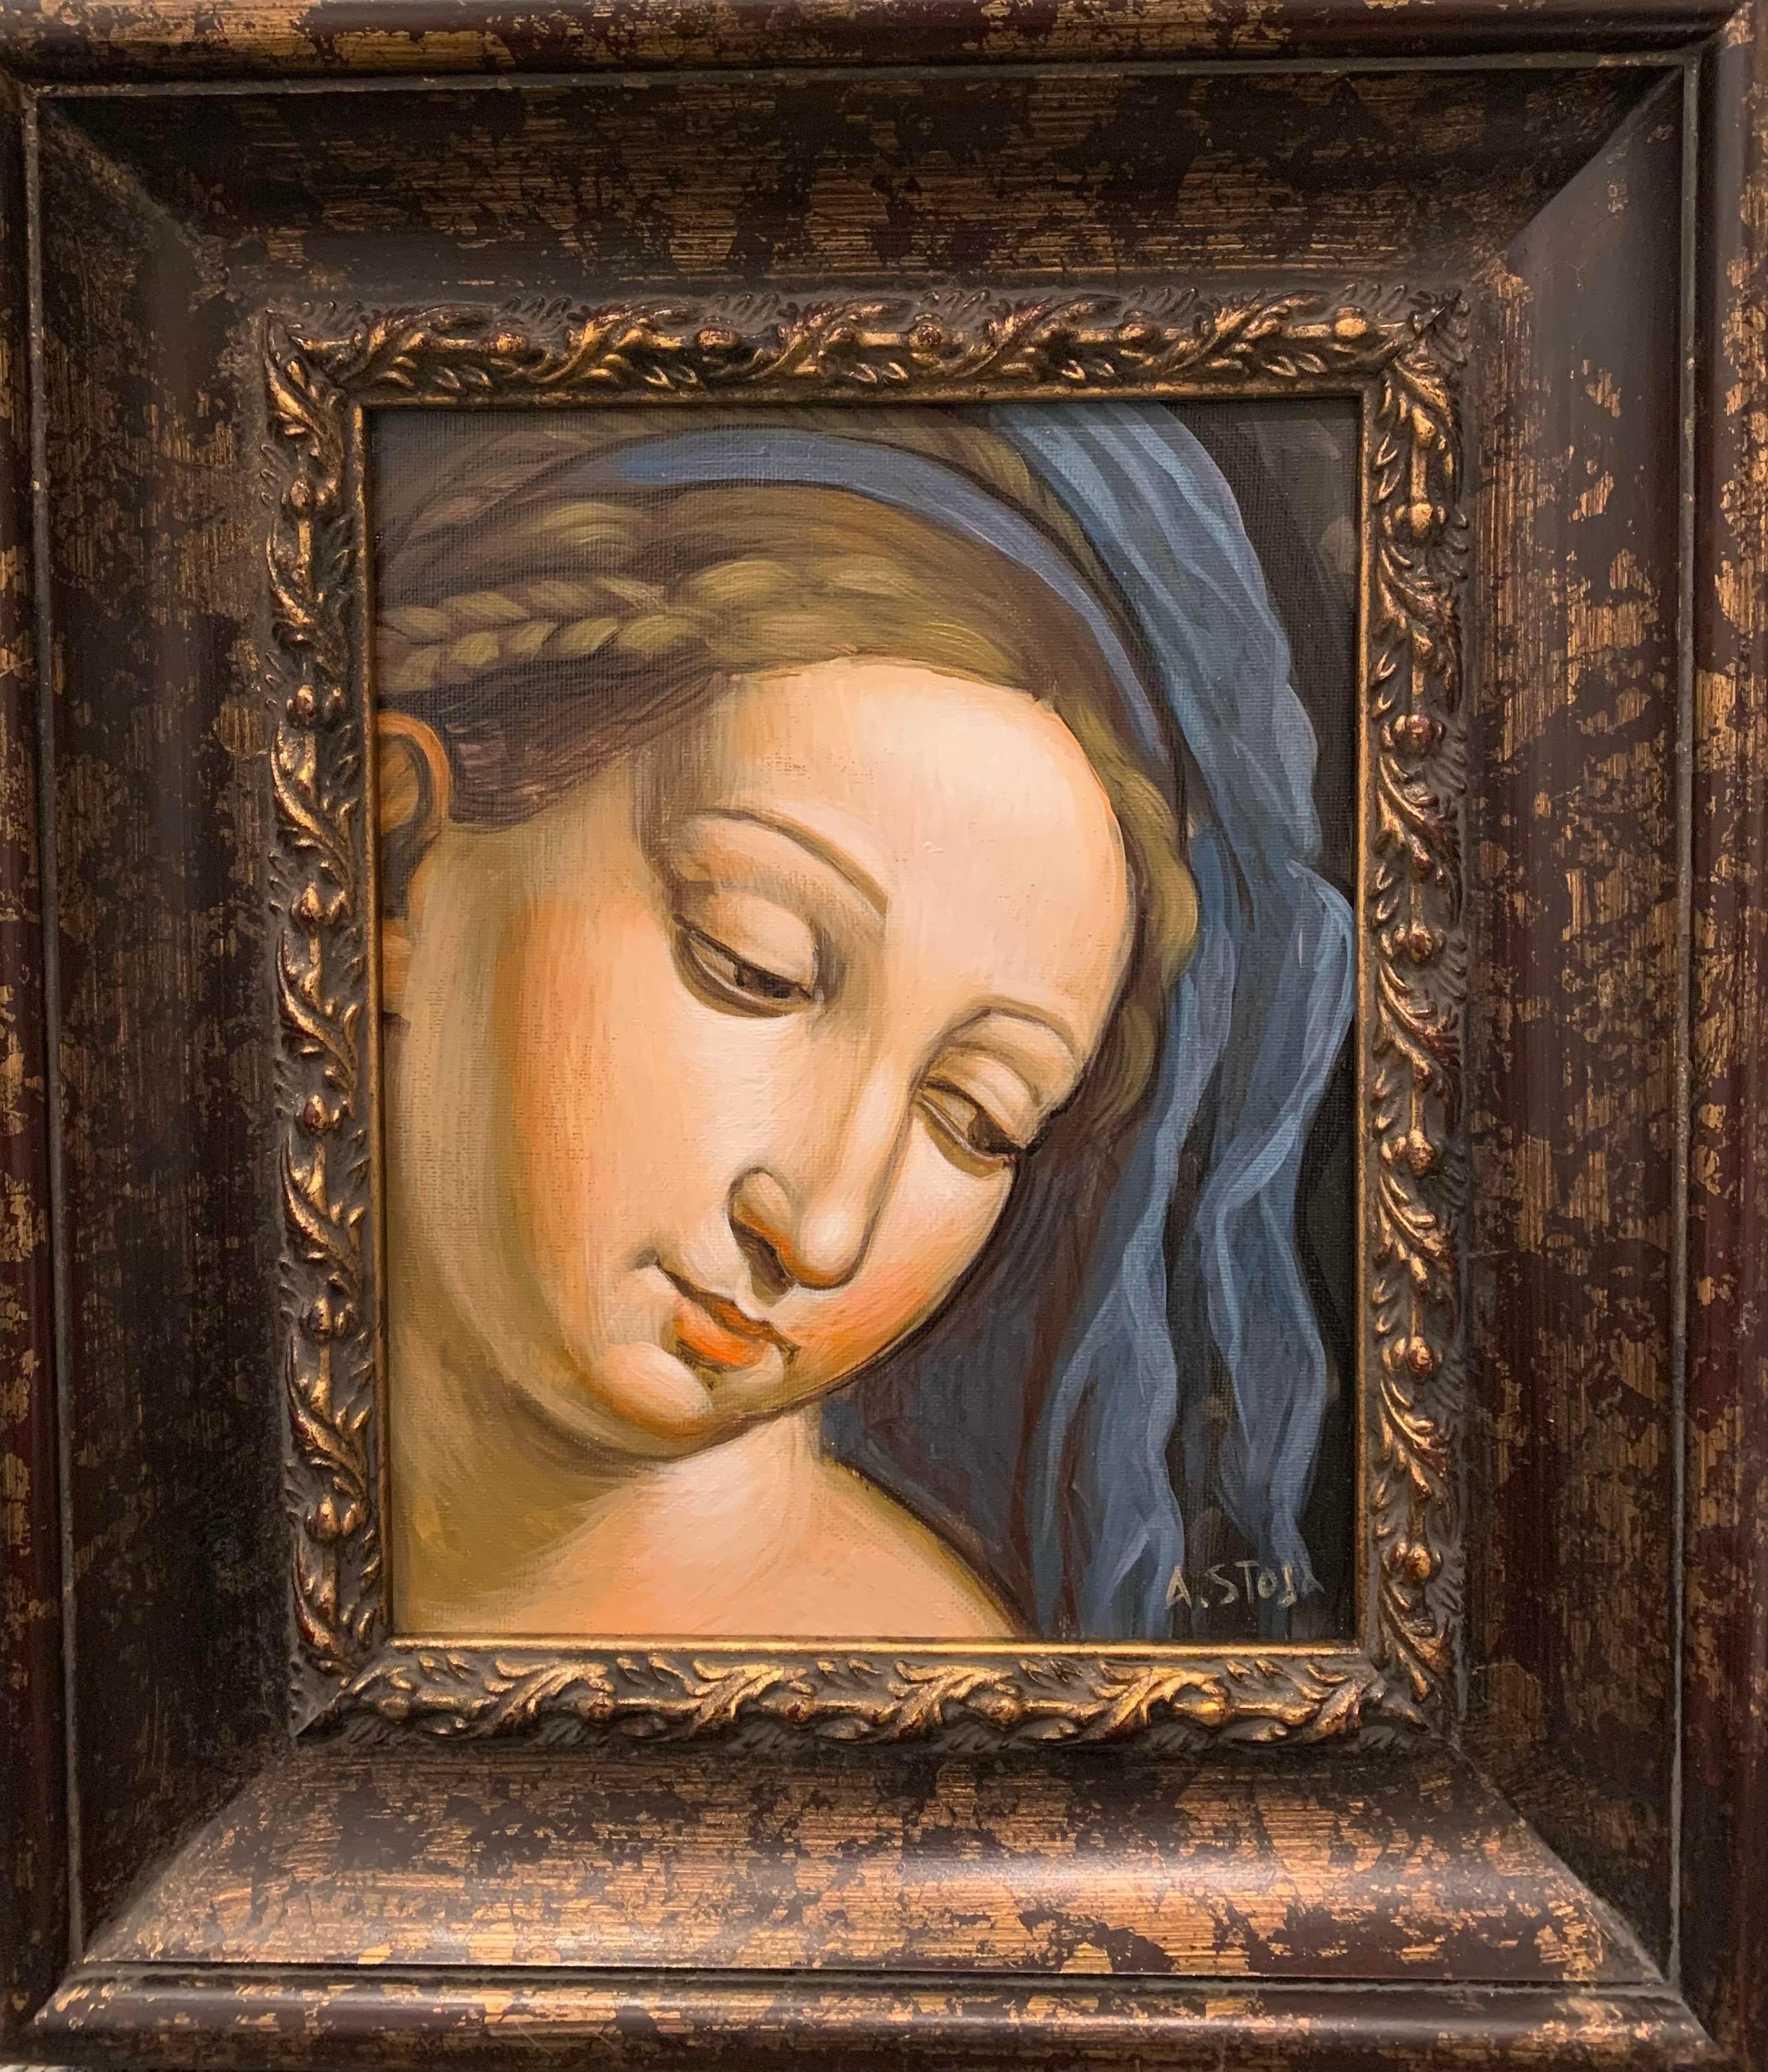 Acrylique sur toile - Madonna de la Renaissance italienne